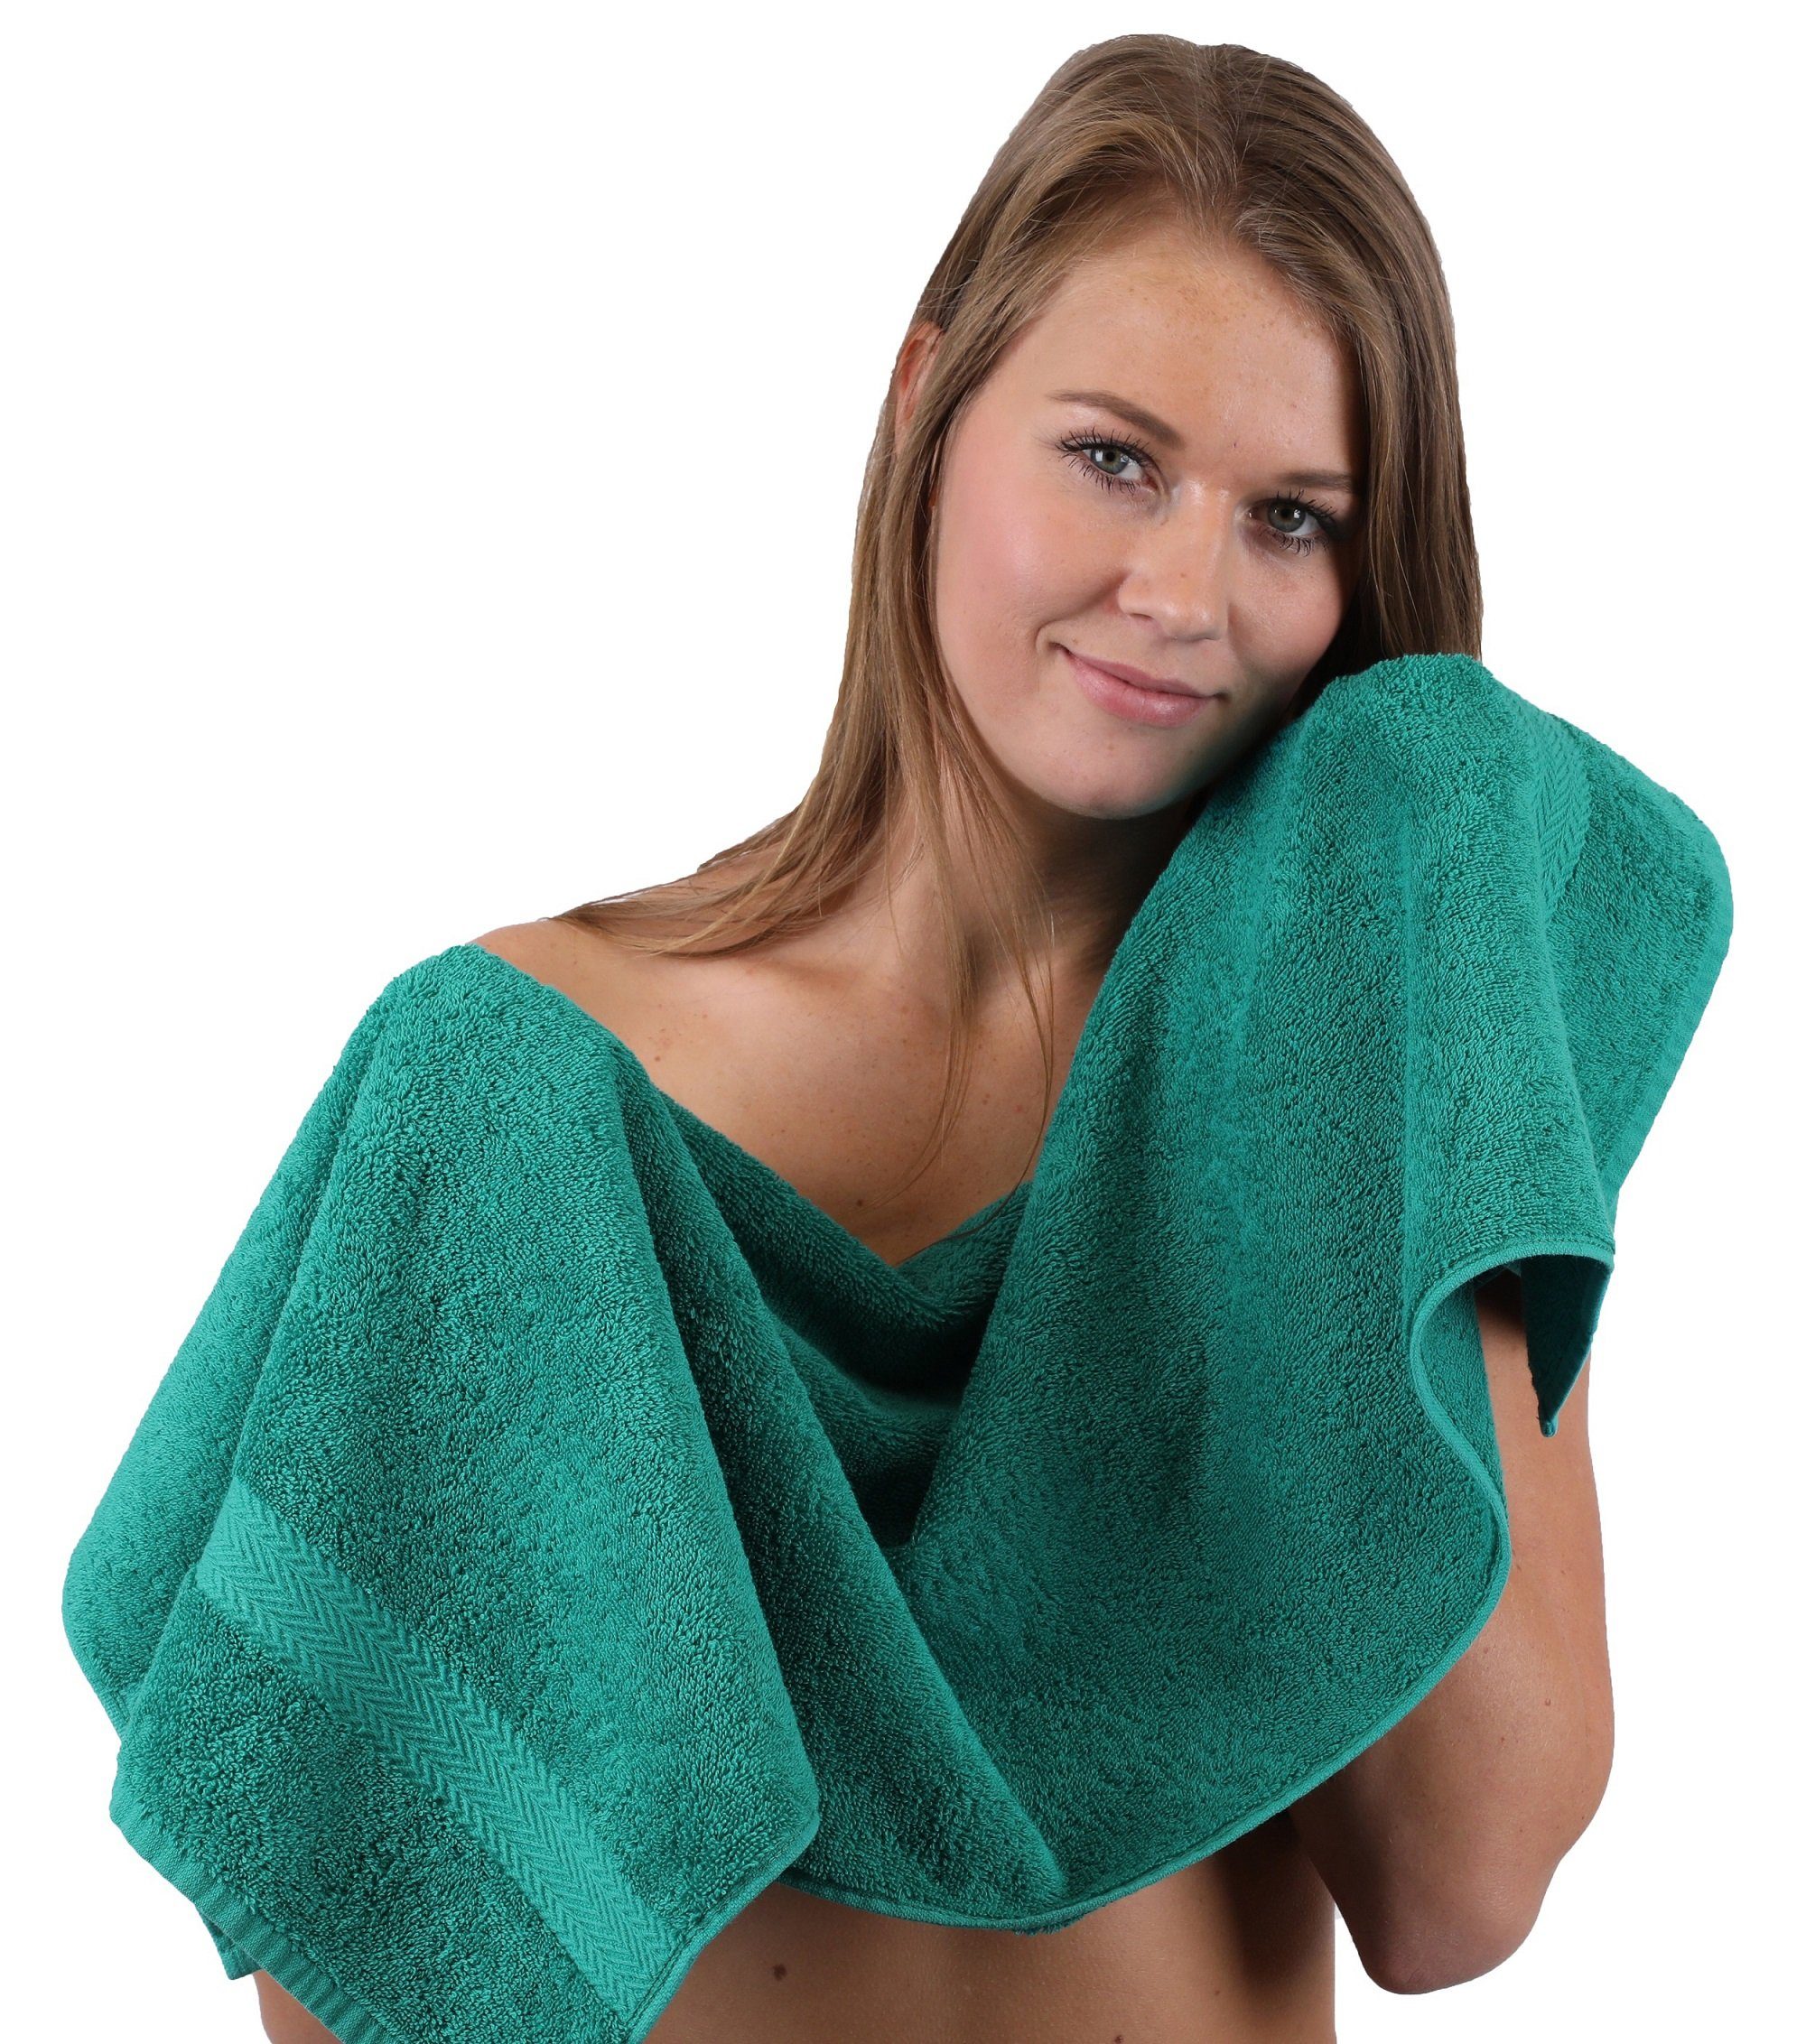 10-TLG. Betz Baumwolle Premium Gästetücher 4 Grün Baumwolle Beige, Set & Waschhandschuhe Handtuch-Set 100% Smaragd 100% Farbe Handtuch 2 2 Handtücher 2 Duschtücher